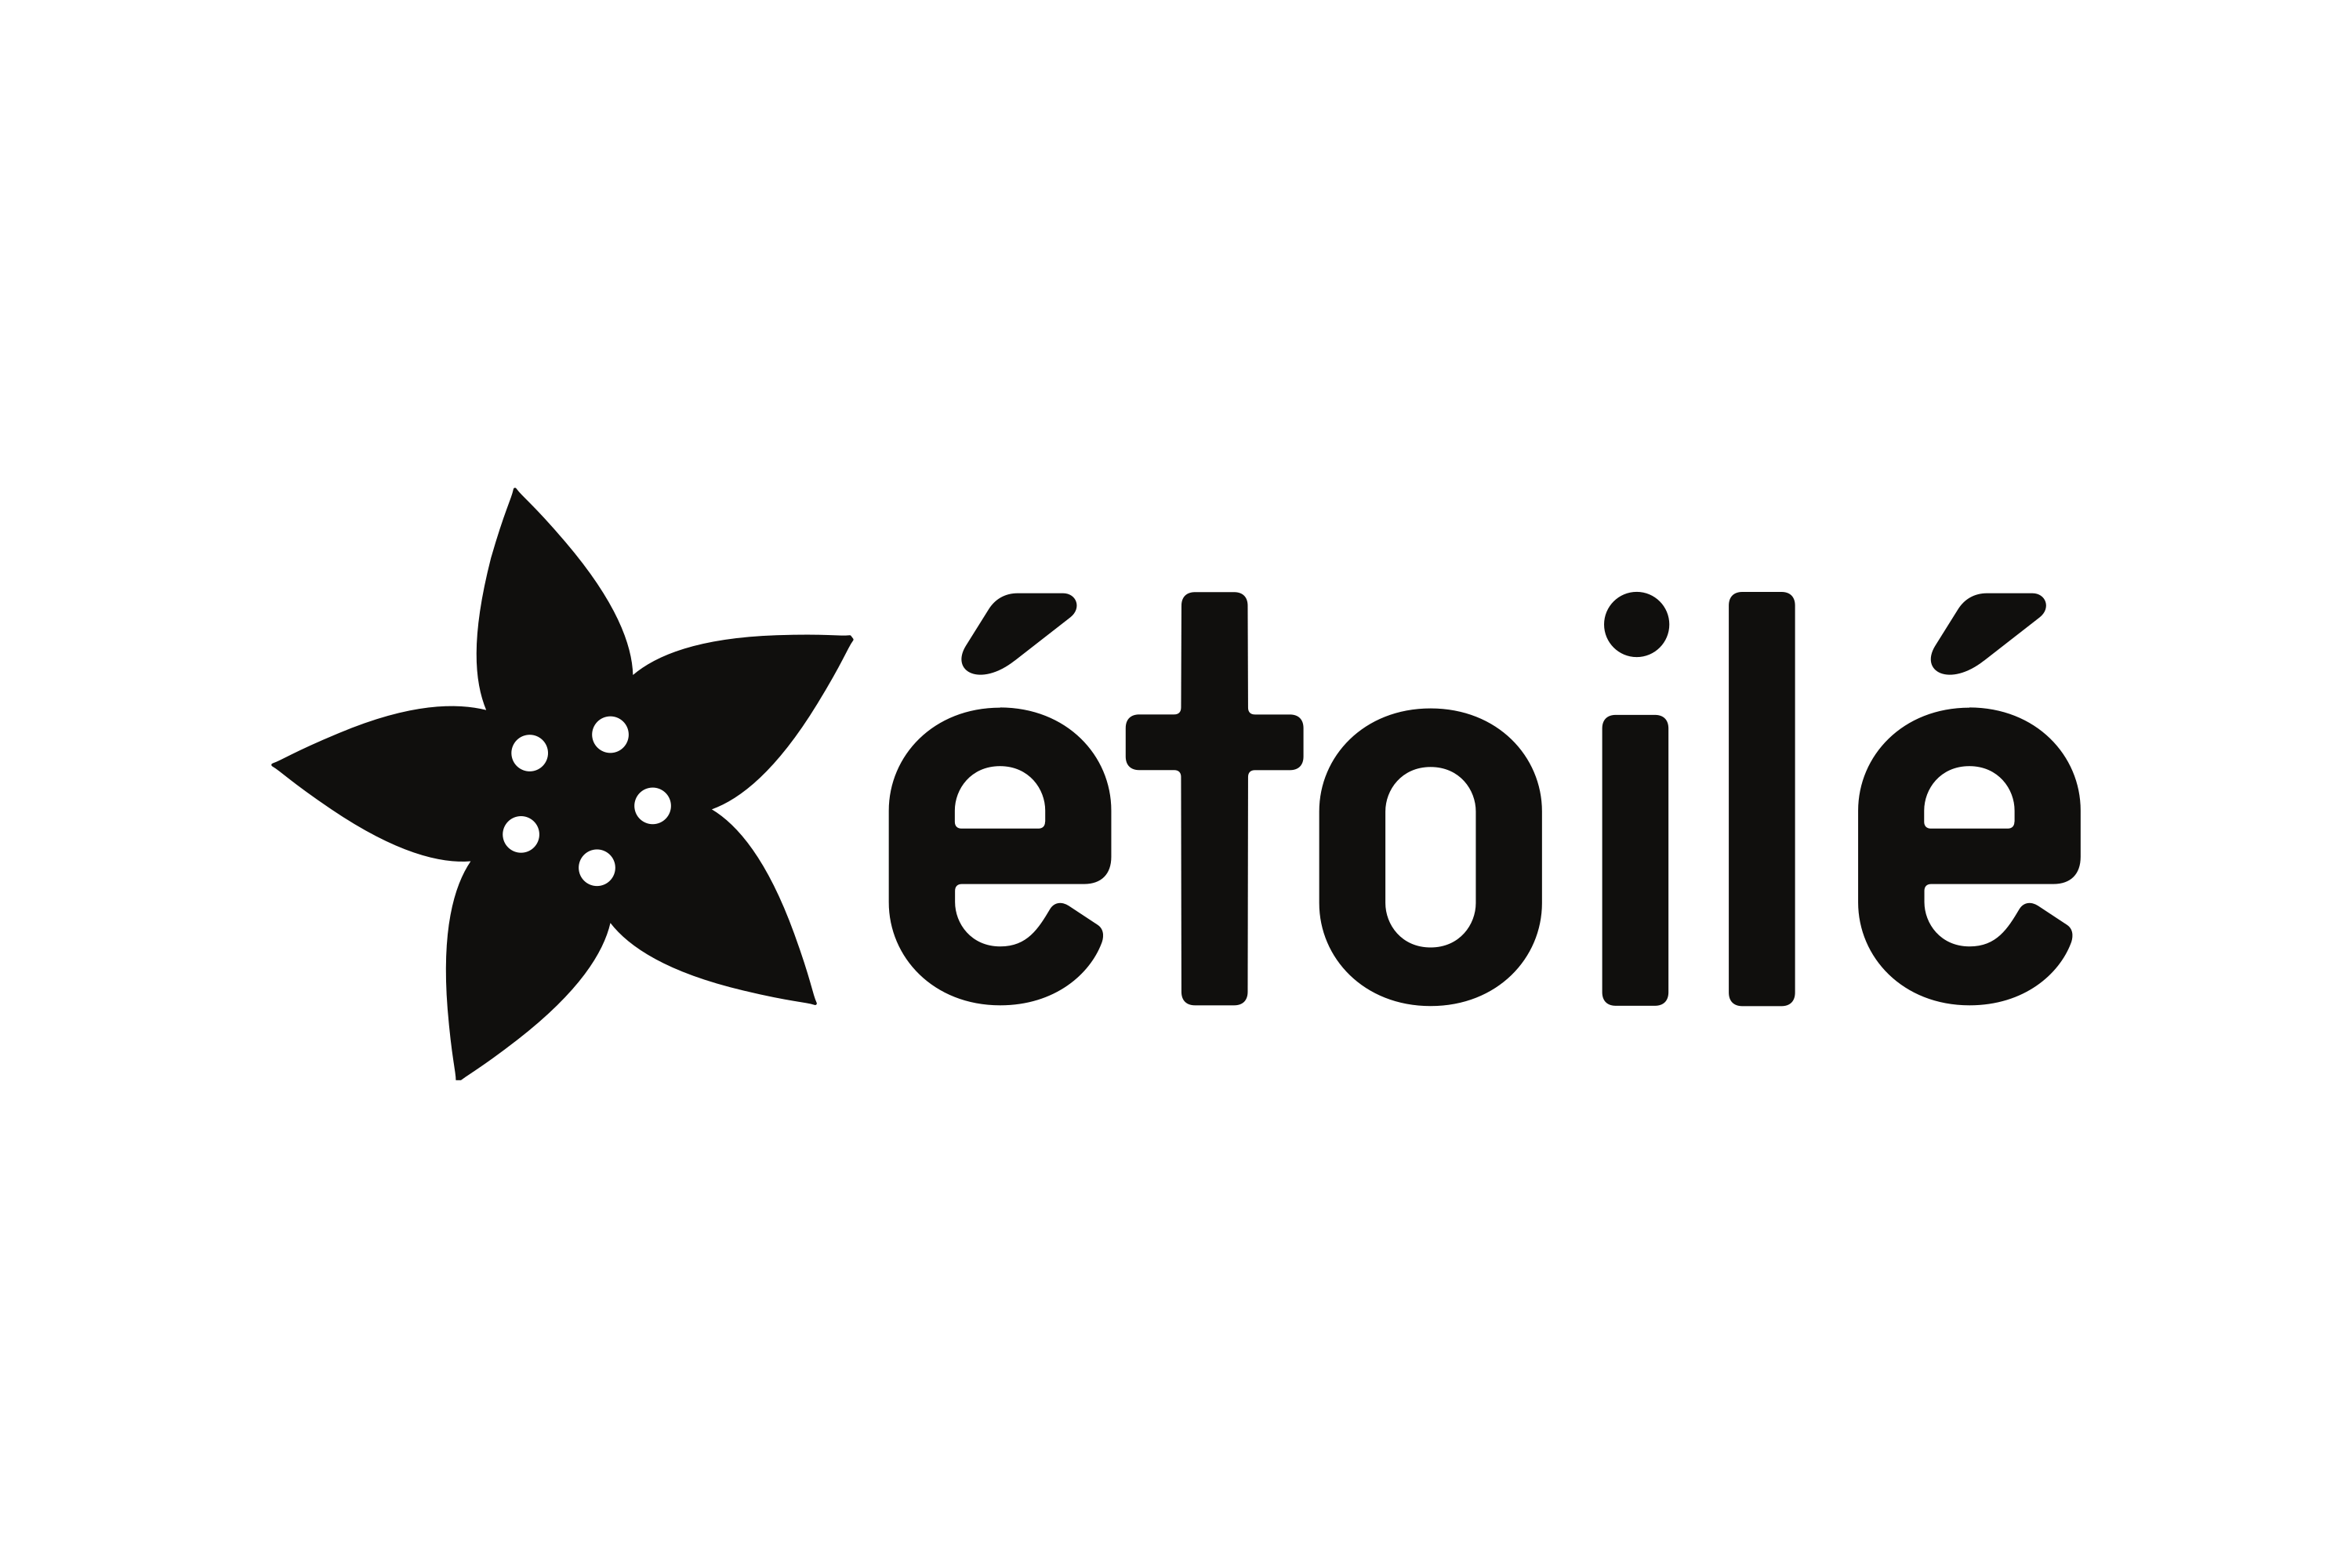 Download Étoilé Logo in SVG Vector or PNG File Format - Logo.wine